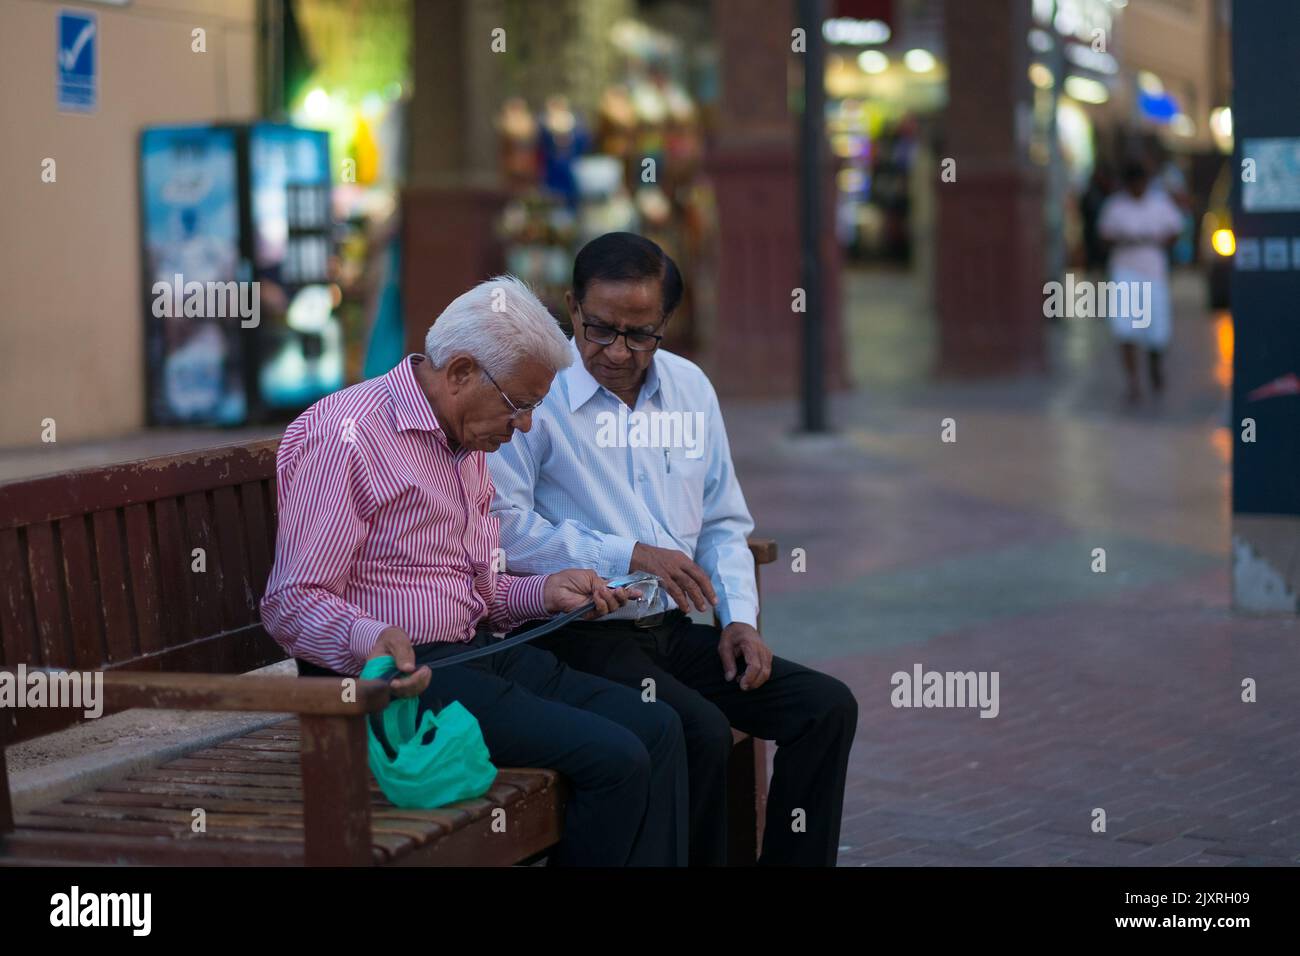 Deux vieux hommes portant des lunettes, des chemises à boutons et des pantalons sont assis sur un banc pour inspecter une ceinture qu'ils viennent d'acheter au souk textile (marché arabe). Banque D'Images